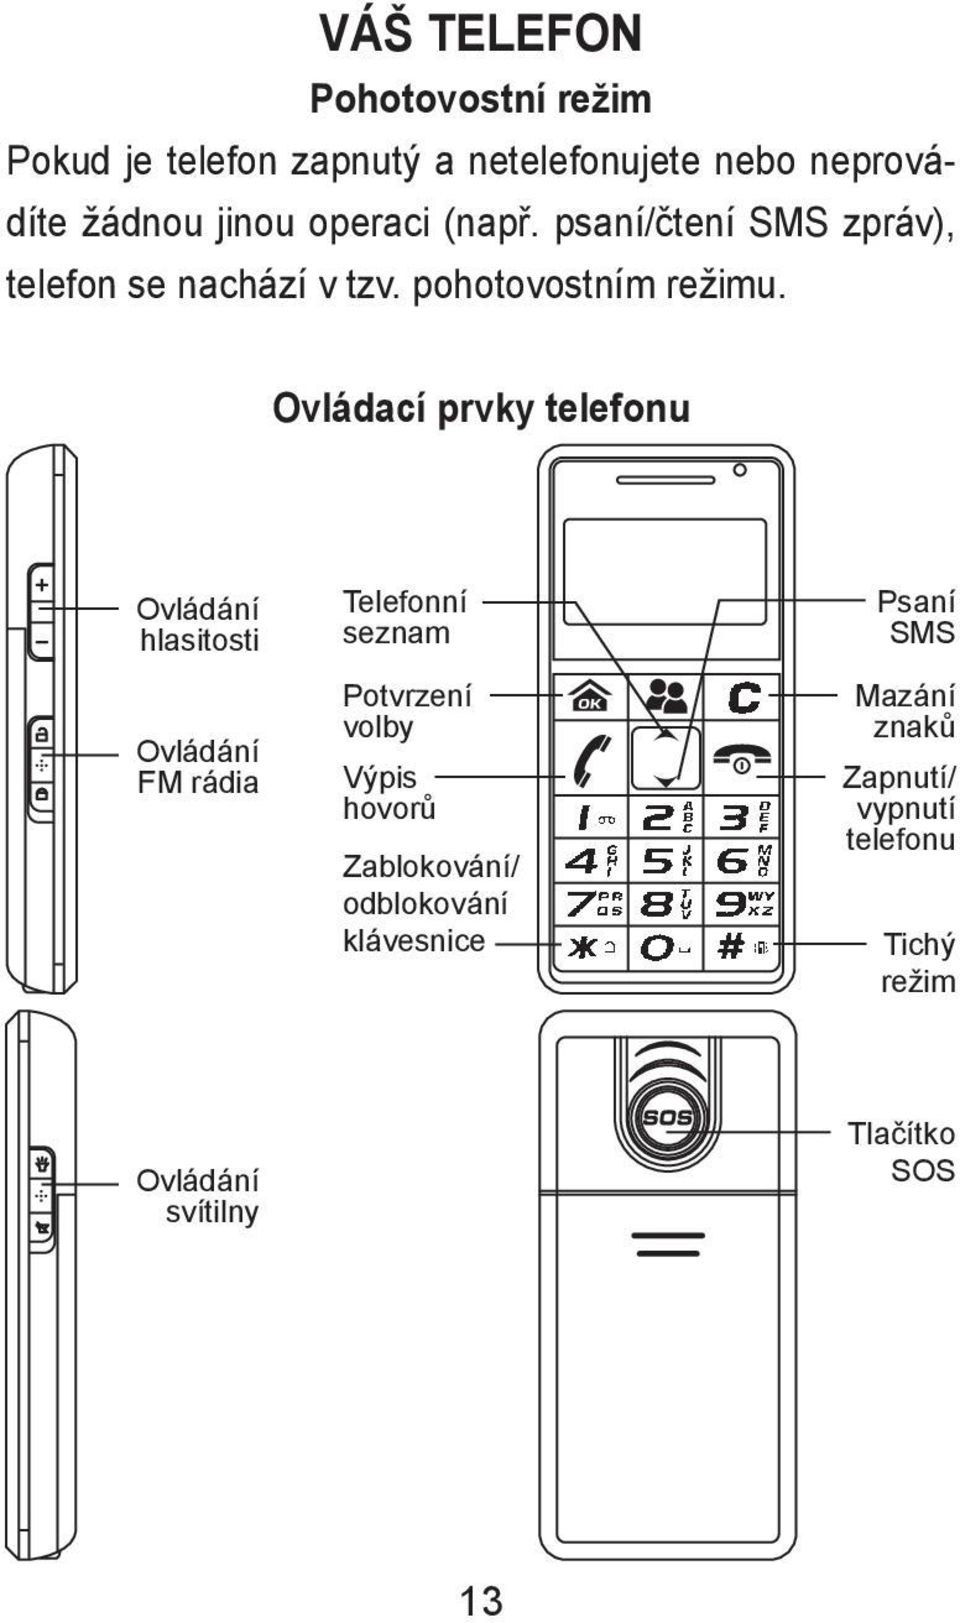 Ovládací prvky telefonu Ovládání hlasitosti Ovládání FM rádia Telefonní seznam Potvrzení volby Výpis hovorů